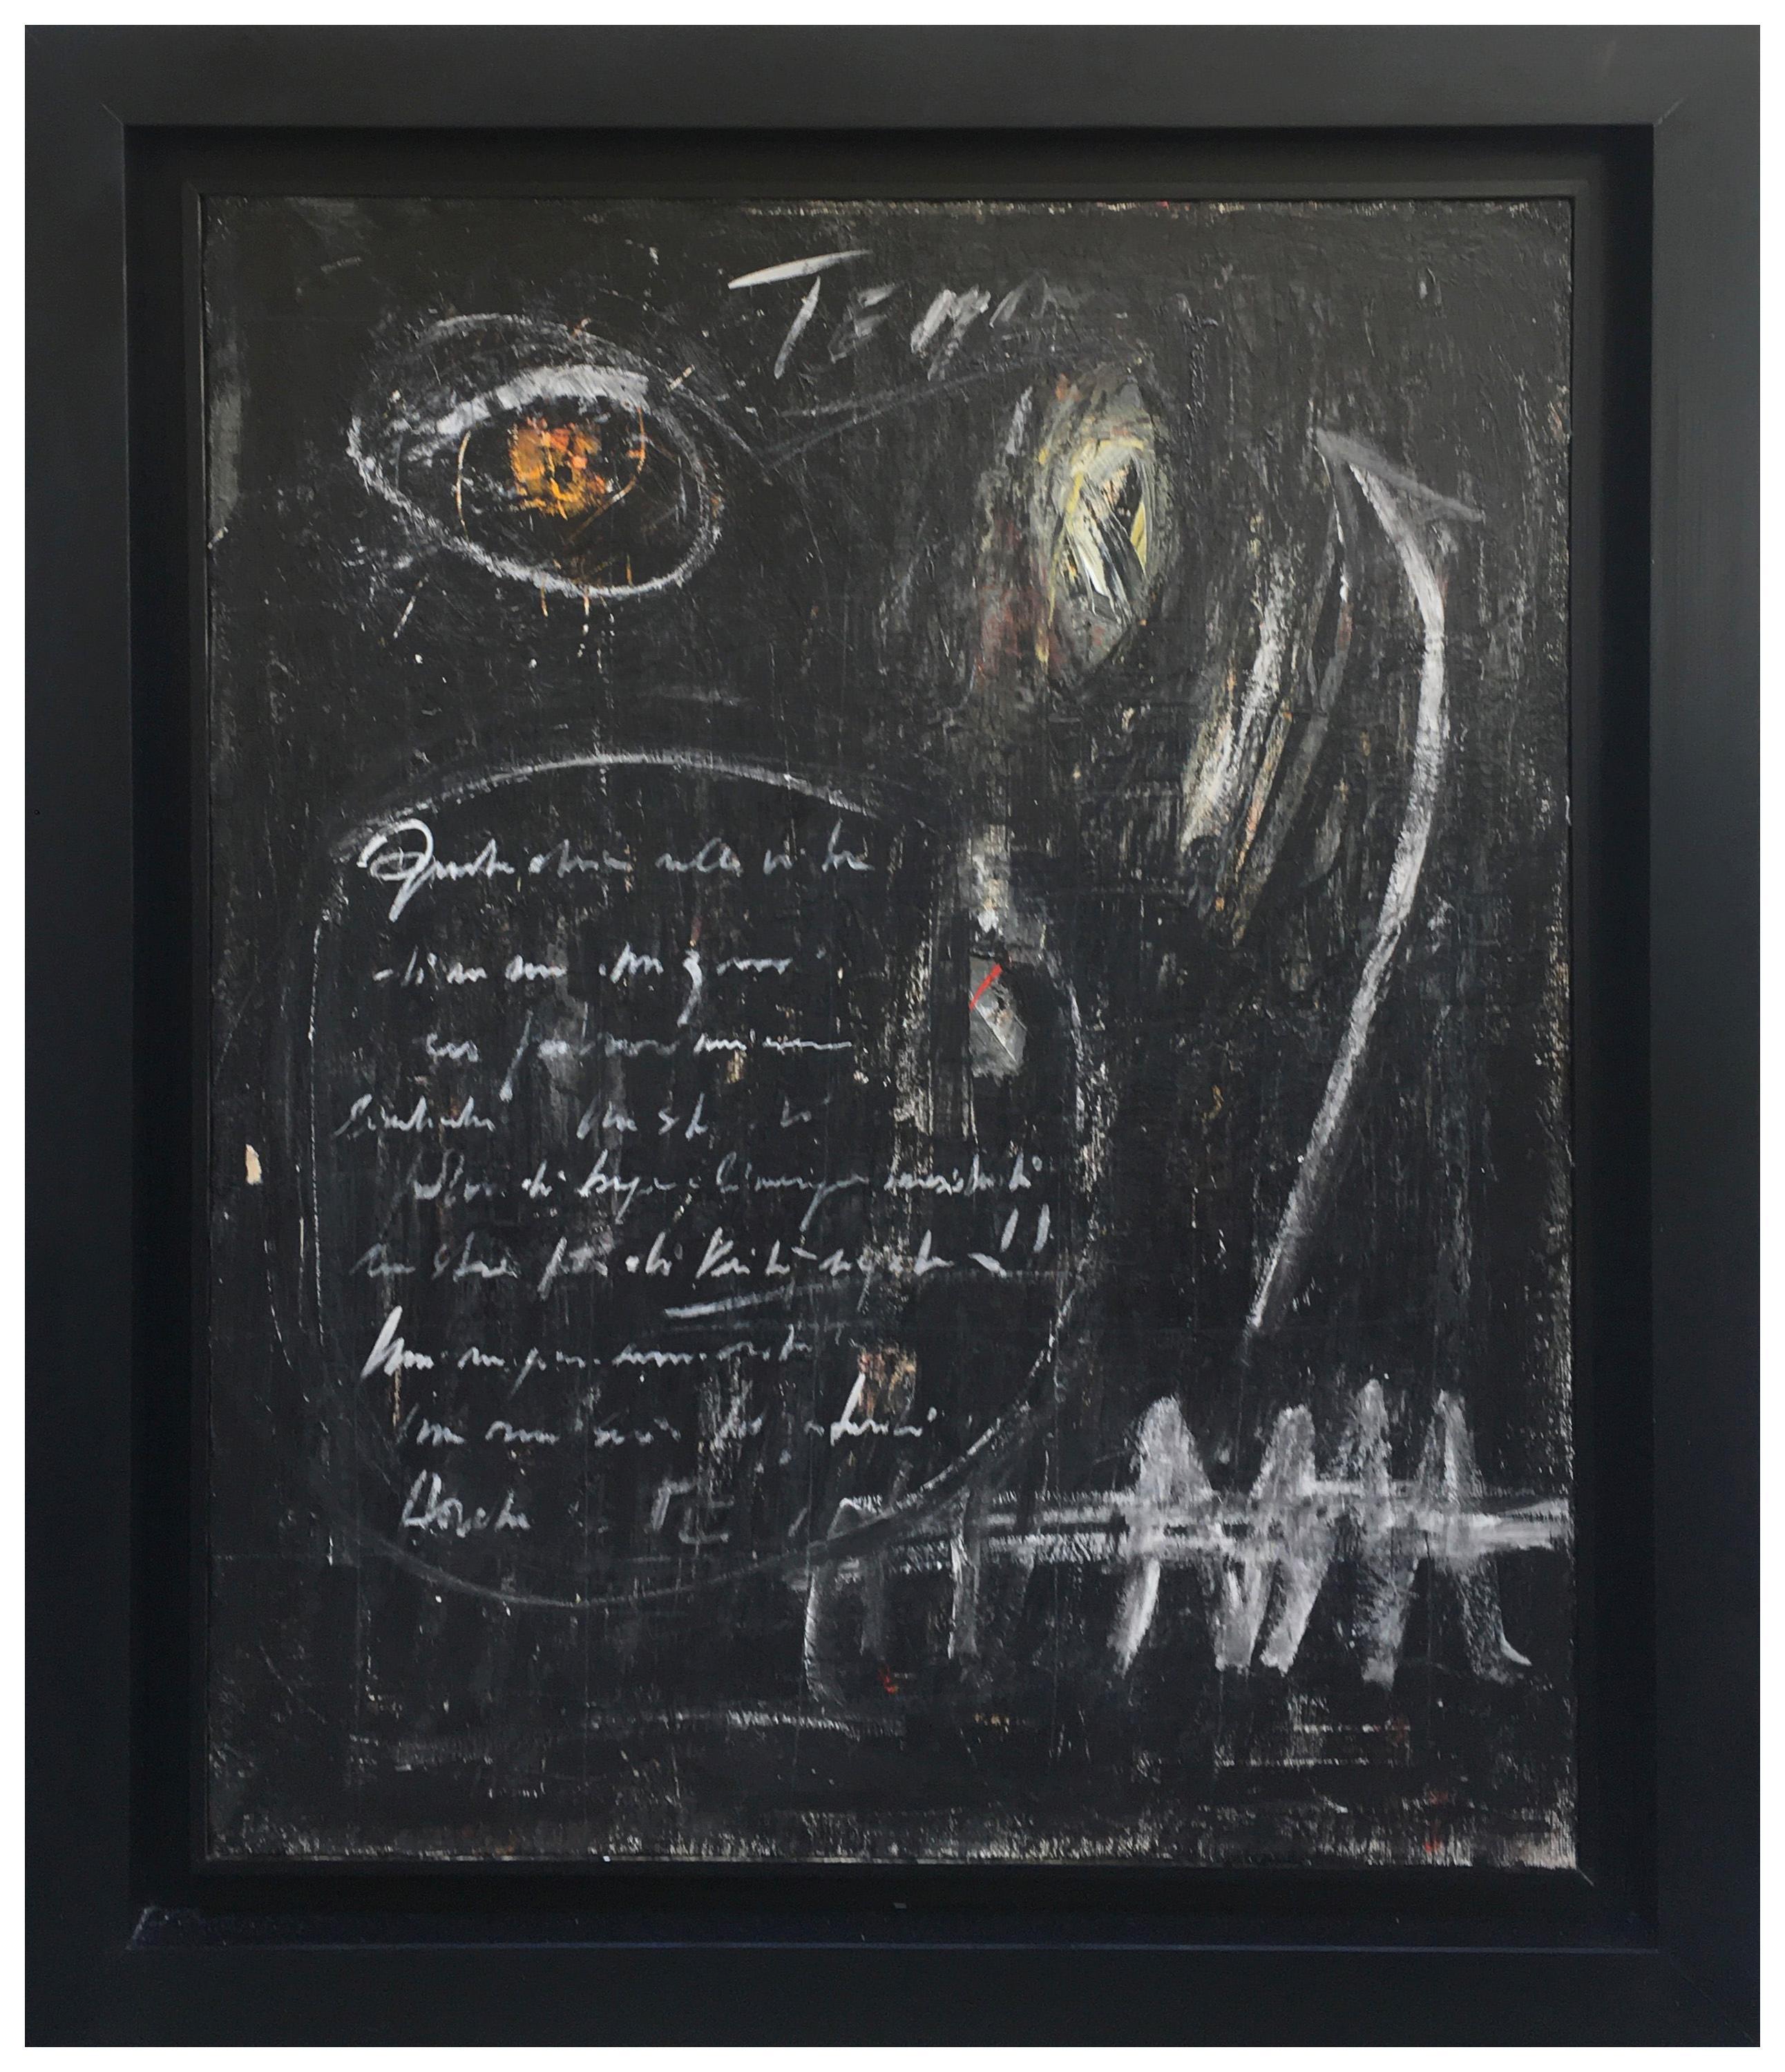 Lavagna - Massimo D'Orta Italia - Öl auf Leinwand mis. cm. 100x80.
Massimo D'Orta wurde 1950 in Neapel geboren, wo er heute lebt und arbeitet.
Atypischer Charakter in der zeitgenössischen Kunst: produziert nahtlos für etwa 35 Jahre, aber es stellt